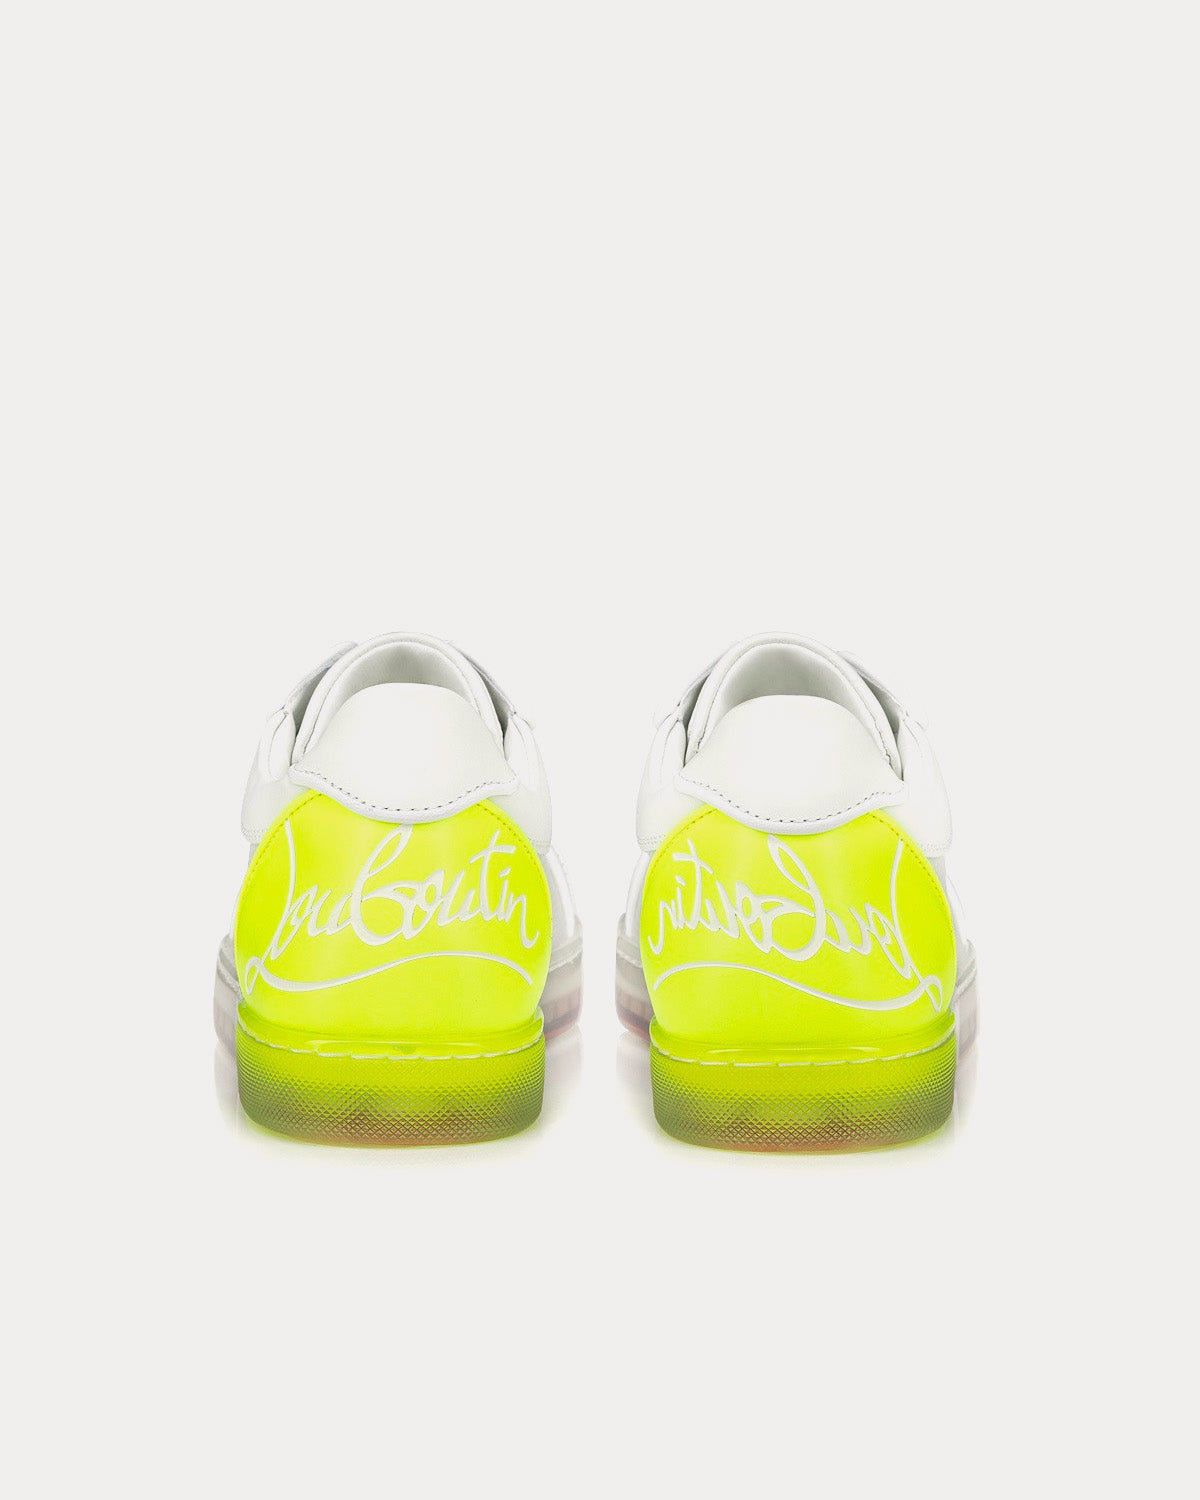 Christian Louboutin - Fun Vieira White / Yellow Low Top Sneakers